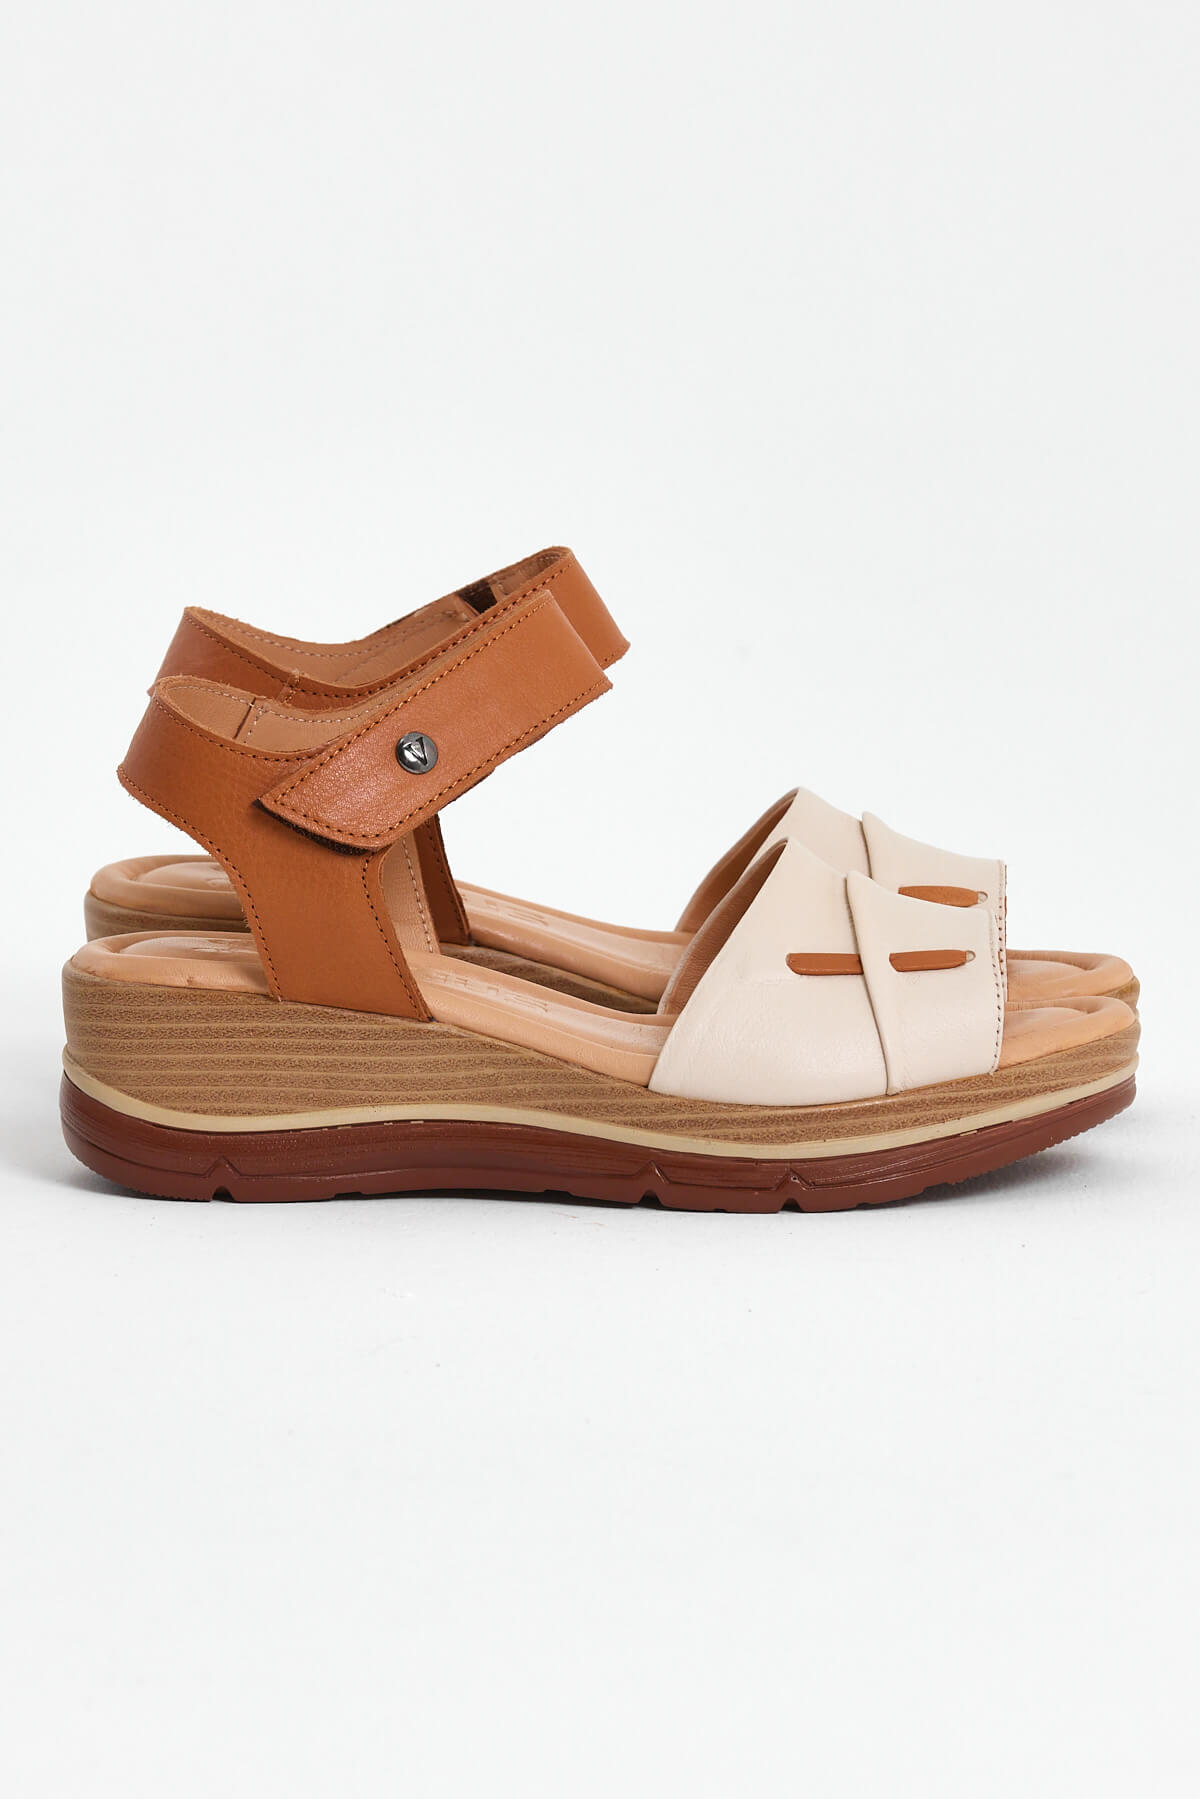 Kadın Comfort Deri Sandalet Bej 2313402Y - Thumbnail